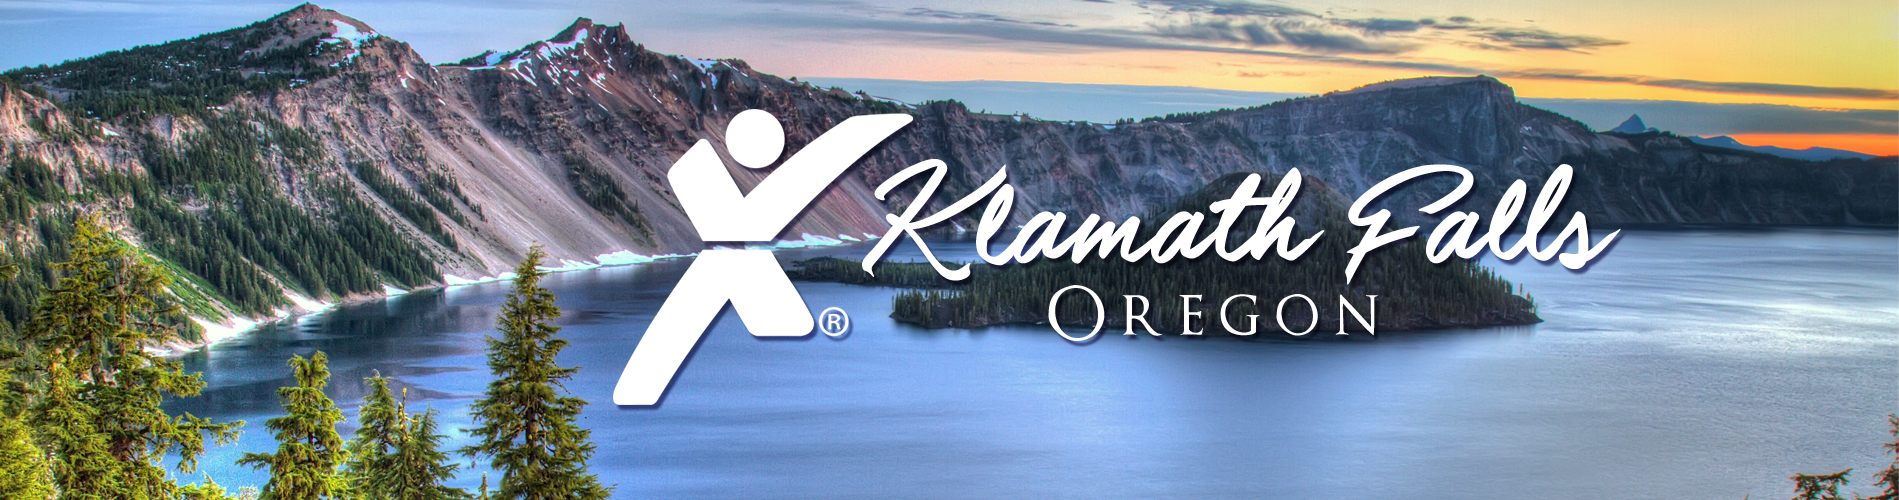 Klamath-Falls-Oregon-Crater-Lake-Express-Employment-Professionals